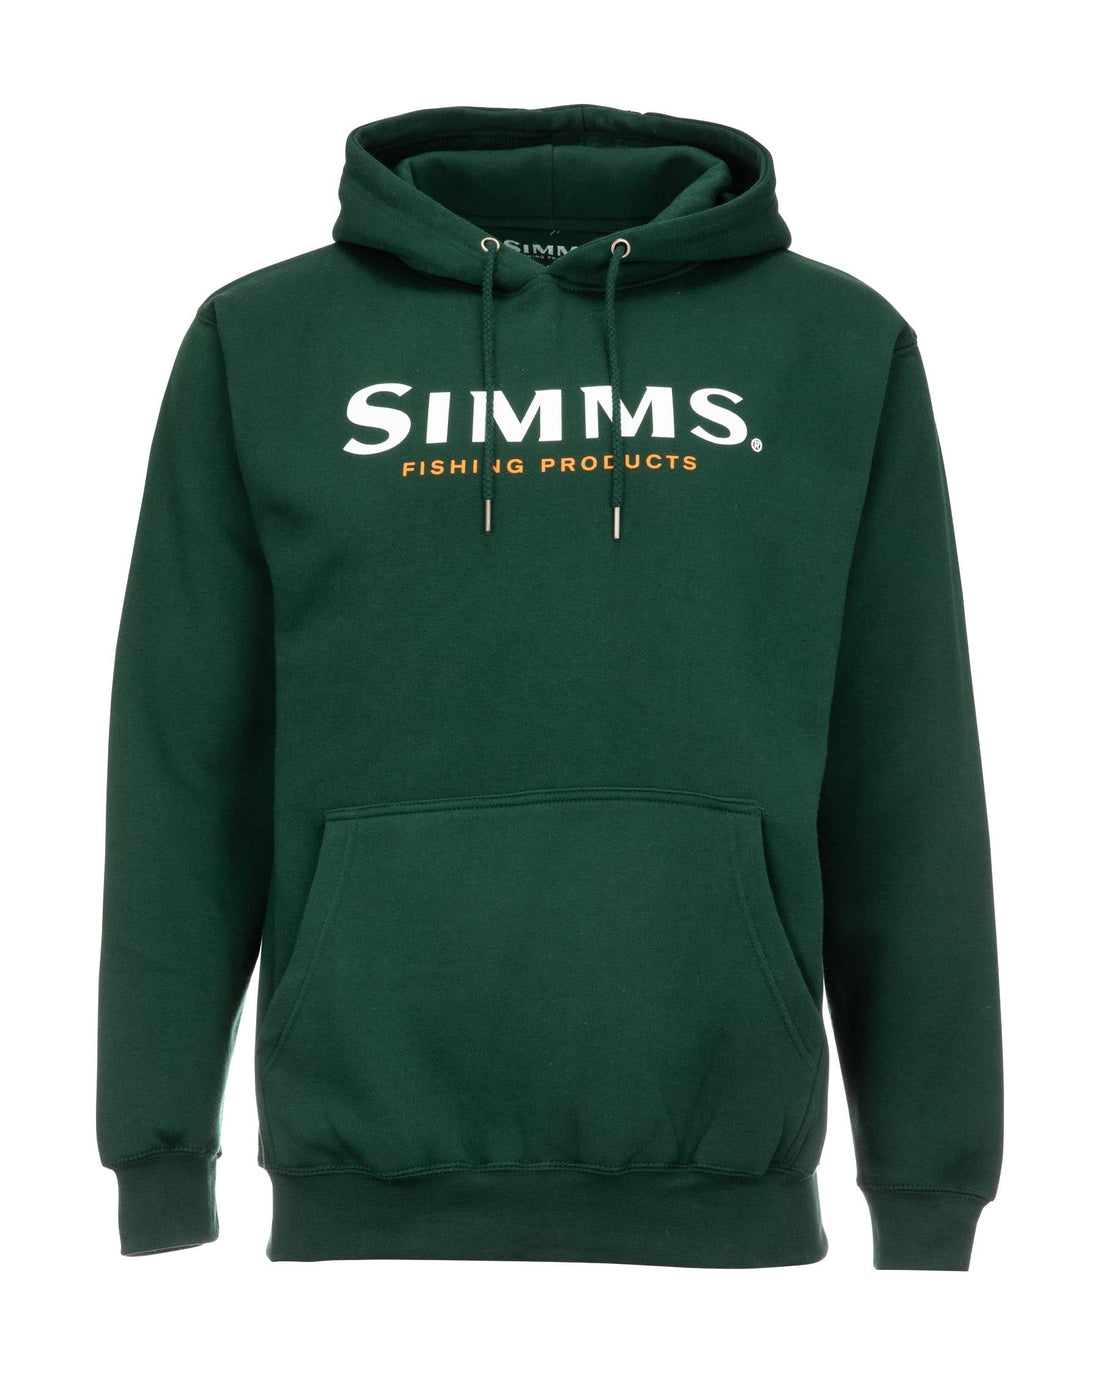 Simms Logo Hoody - LOTWSHQ